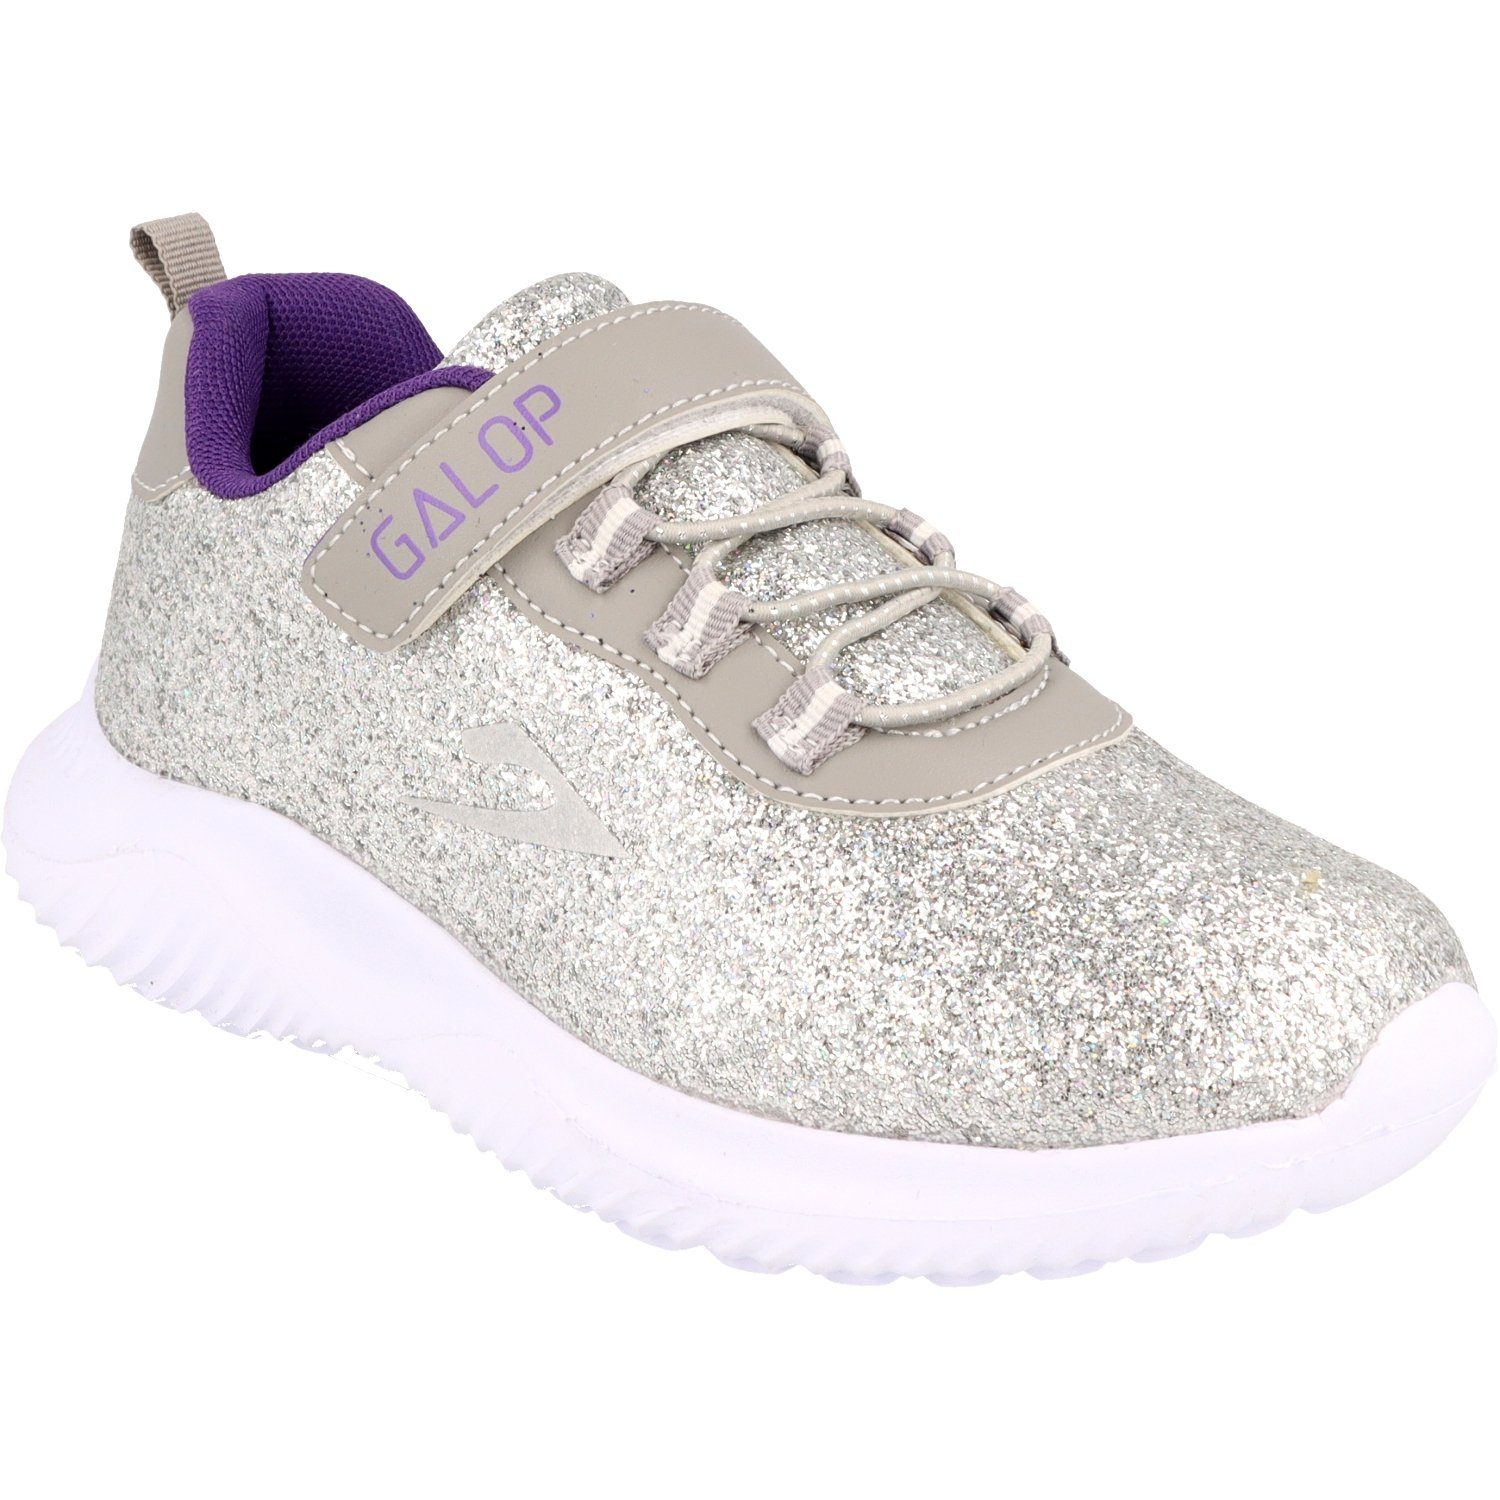 Galop »Kinder L66505 Mädchen Schuhe Sneaker Sportschuhe Glitzer« Sneaker  online kaufen | OTTO